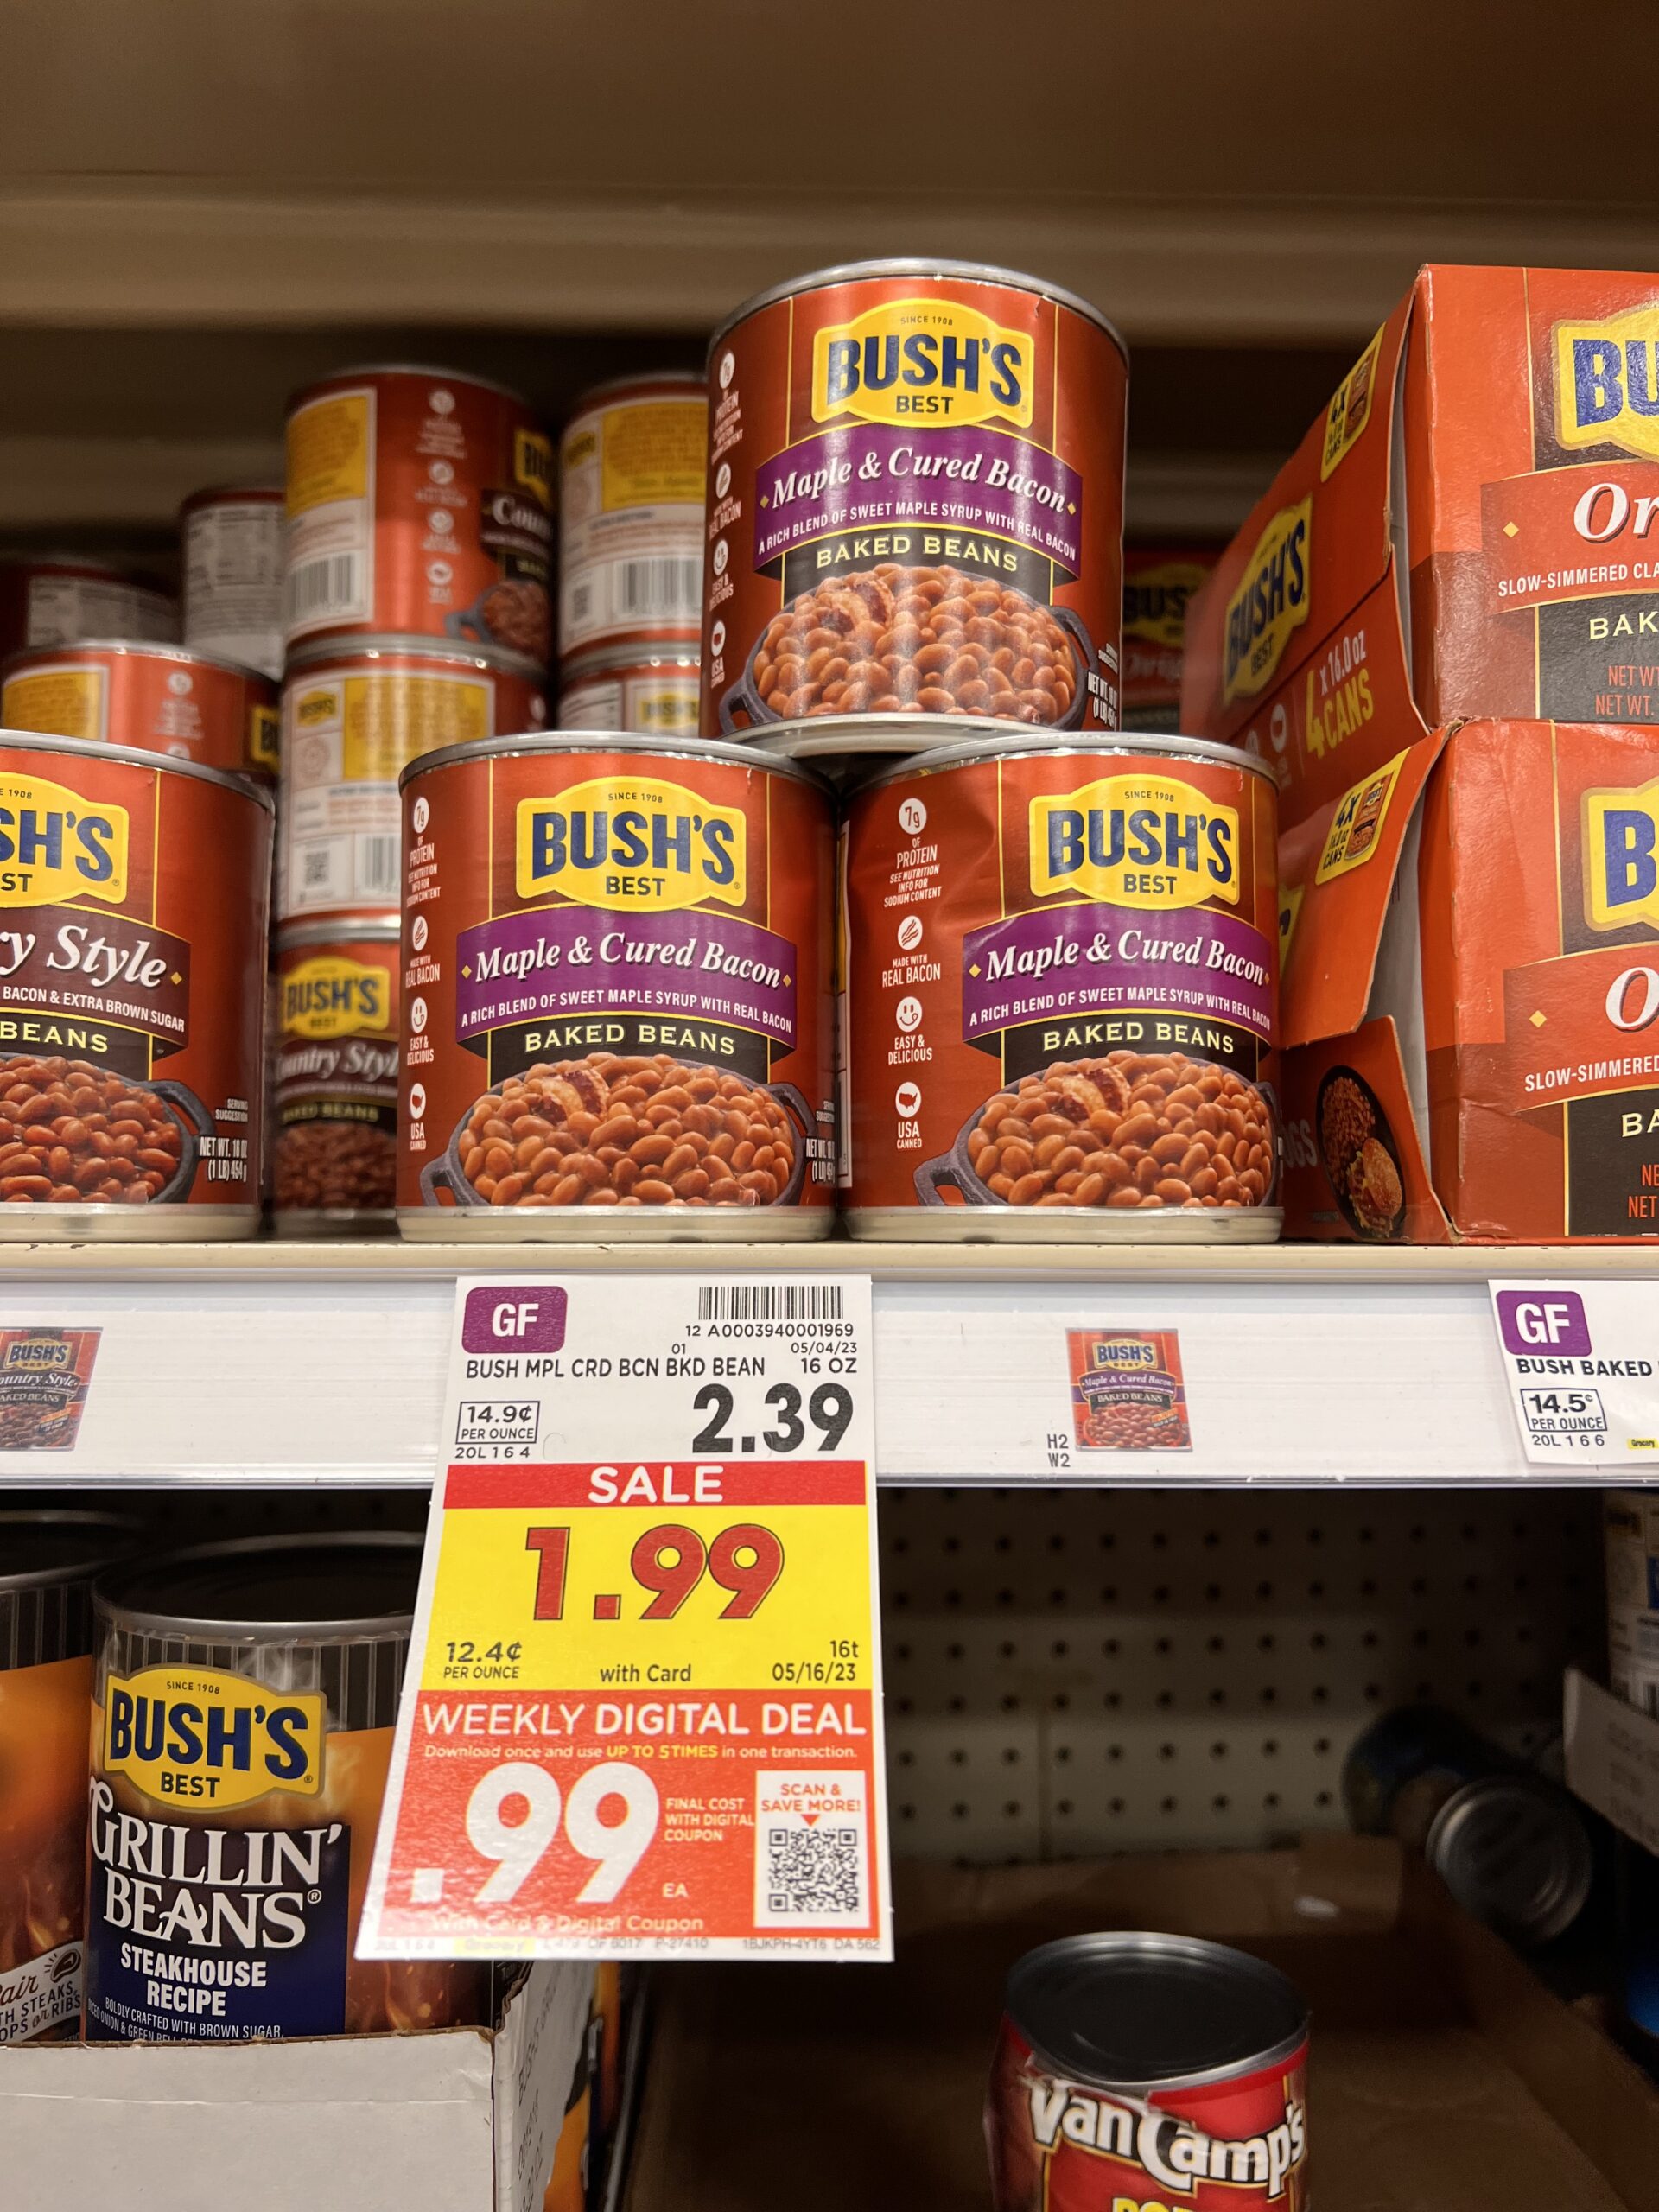 bush's best beans kroger shelf image 2